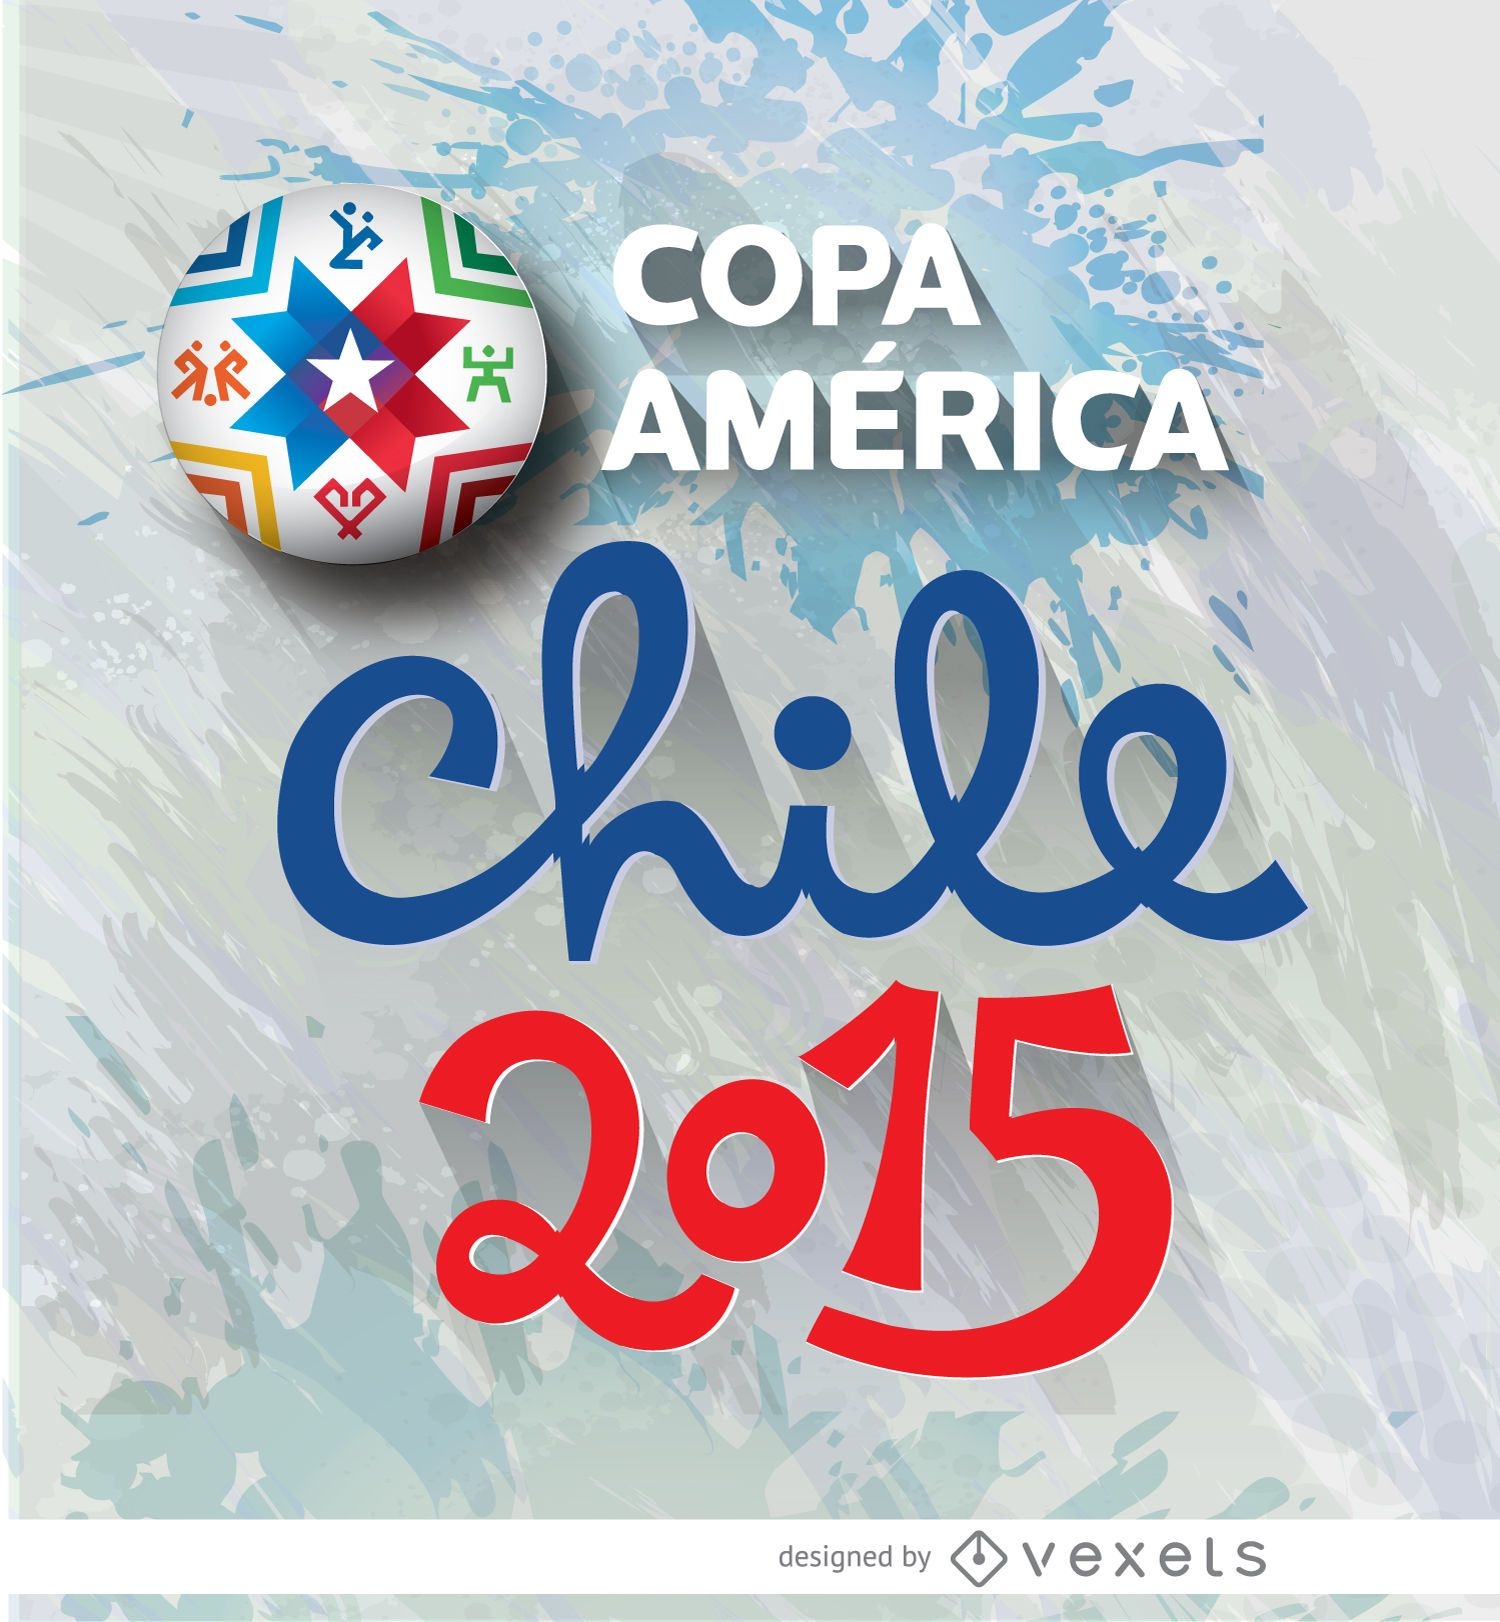 Logotipo da Copa Am?rica Chile